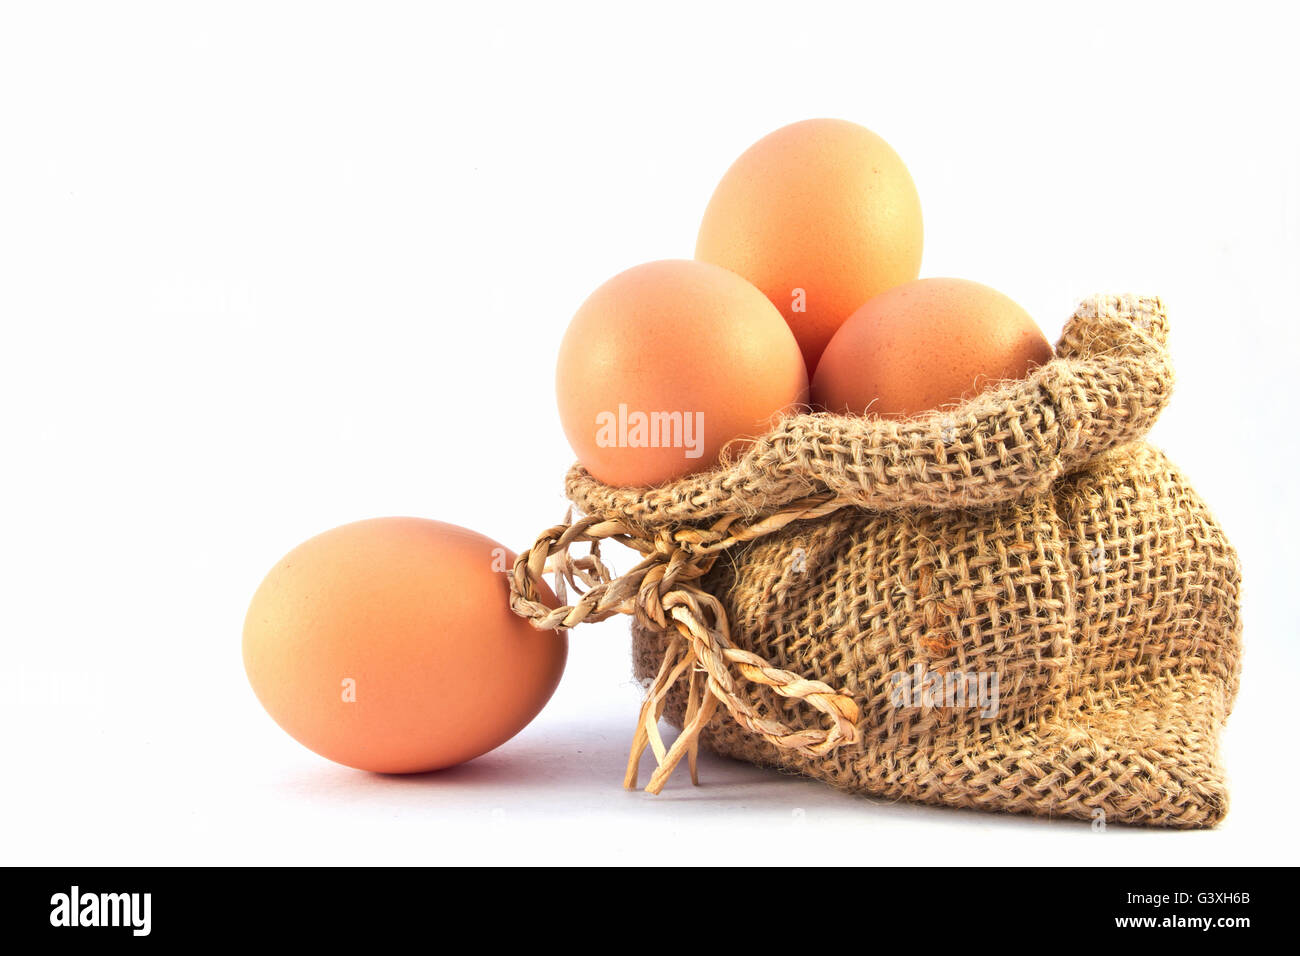 Uova di colore marrone nel sacco di tela isolata su uno sfondo bianco Foto Stock